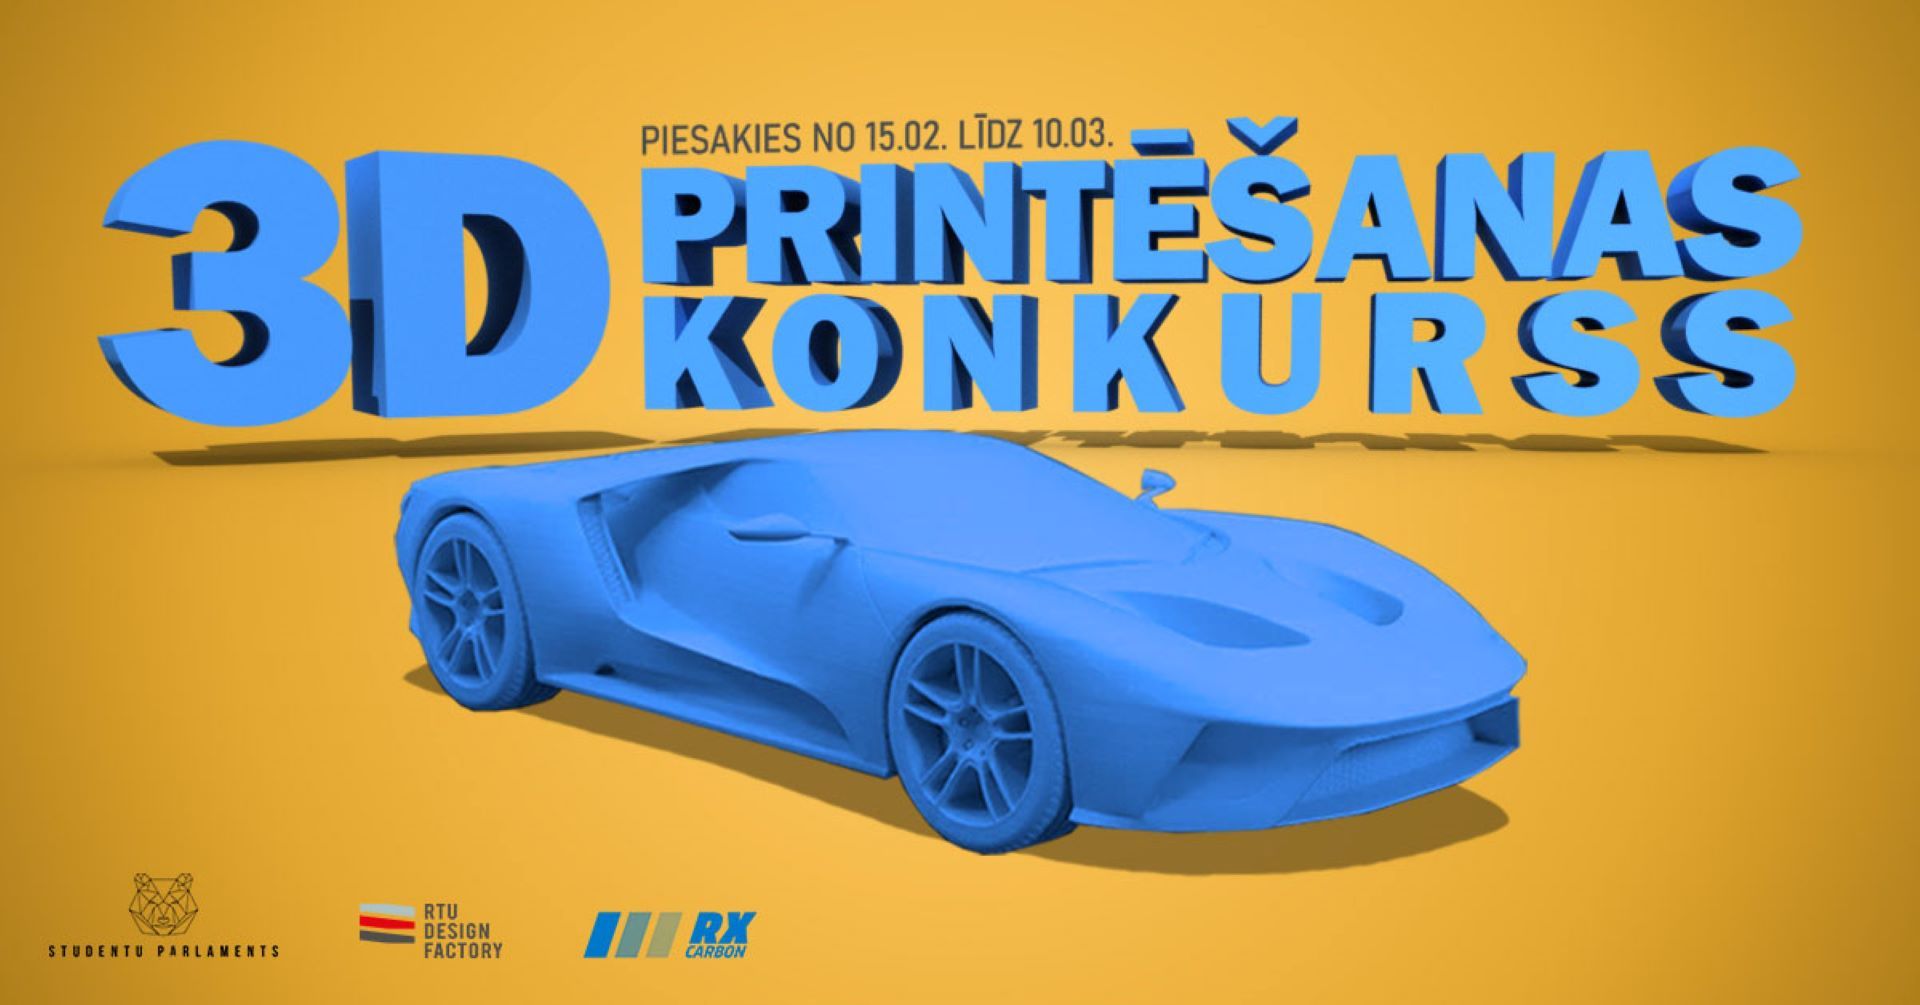 3D printēšanas konkursā studenti izgatavos inovatīvus automobiļu virsbūves modeļus